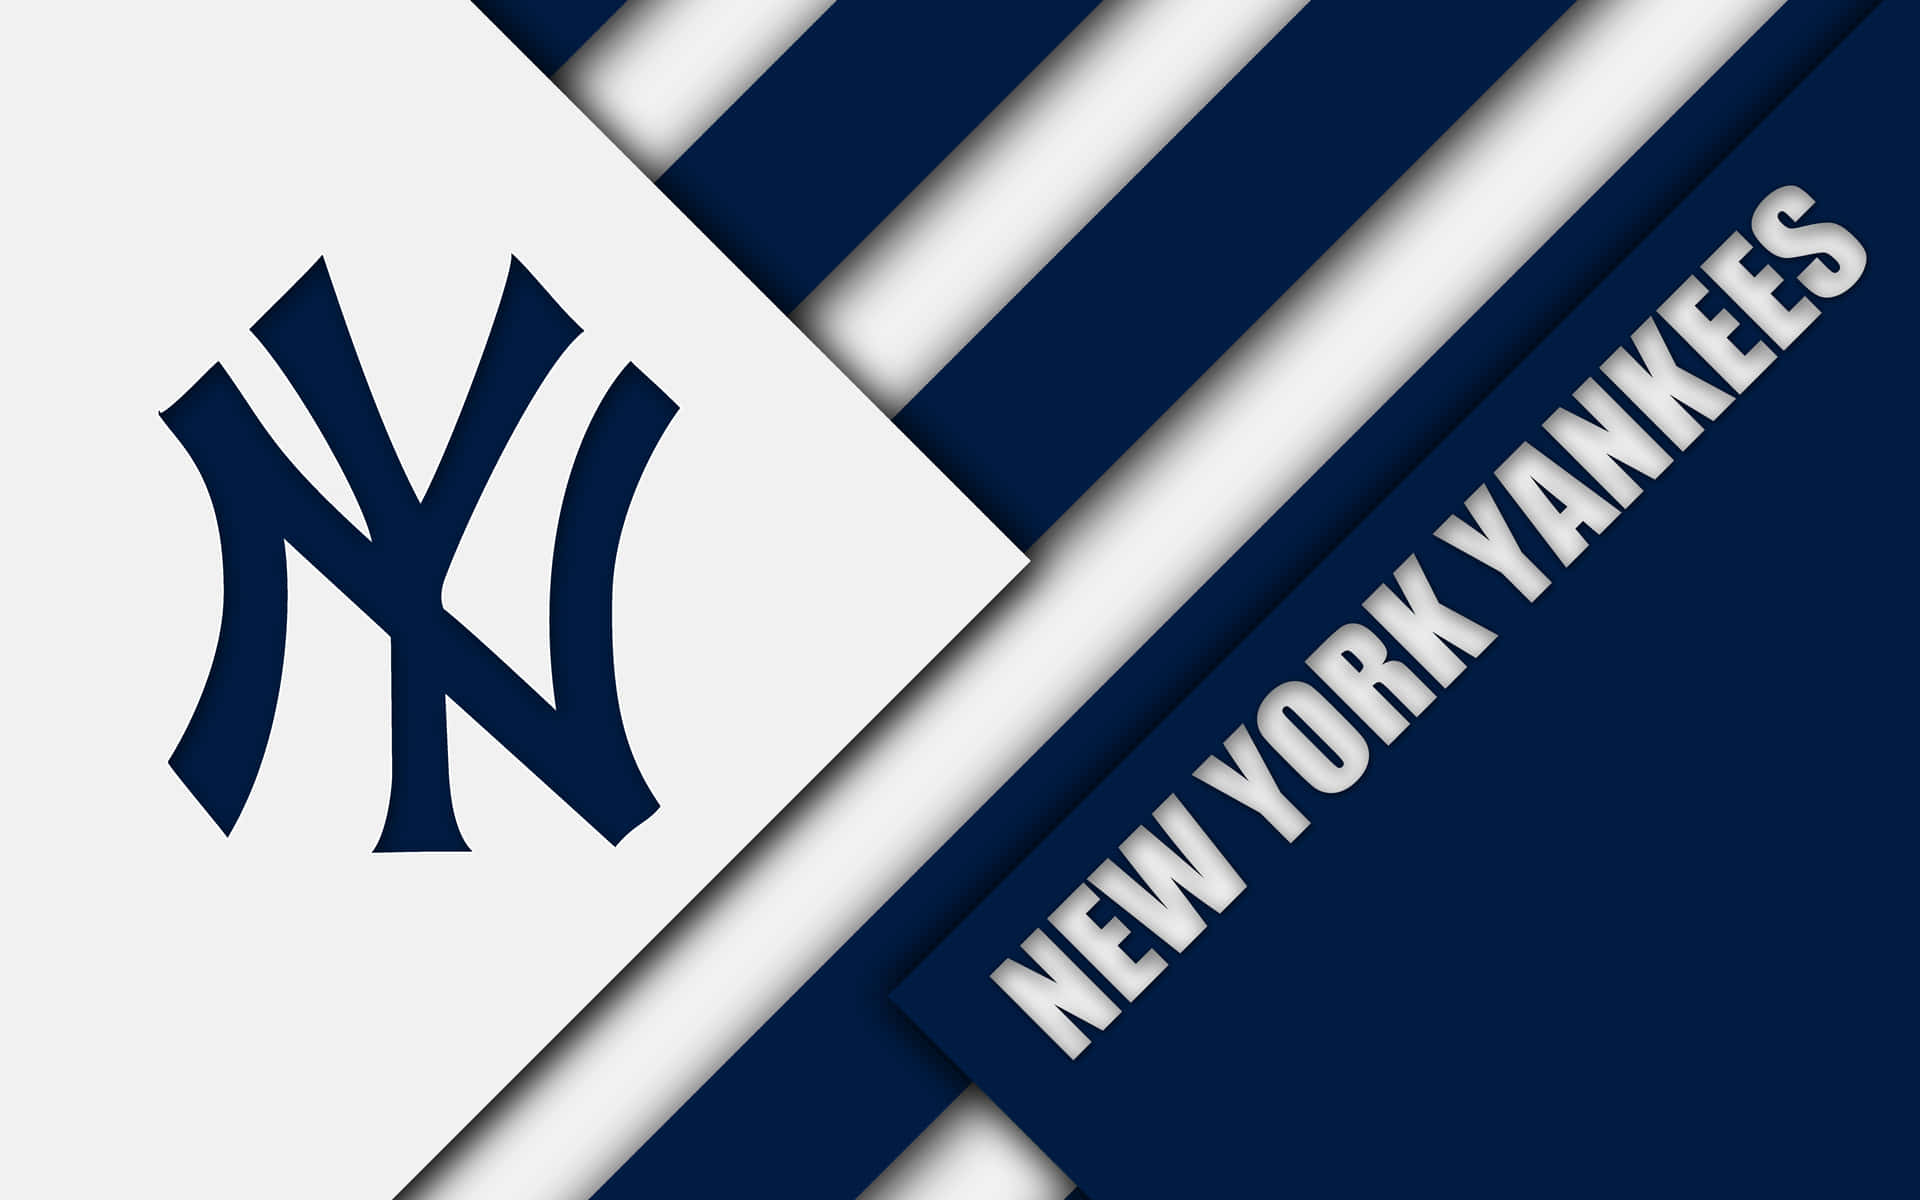 Dielegendären New York Yankees. Wallpaper